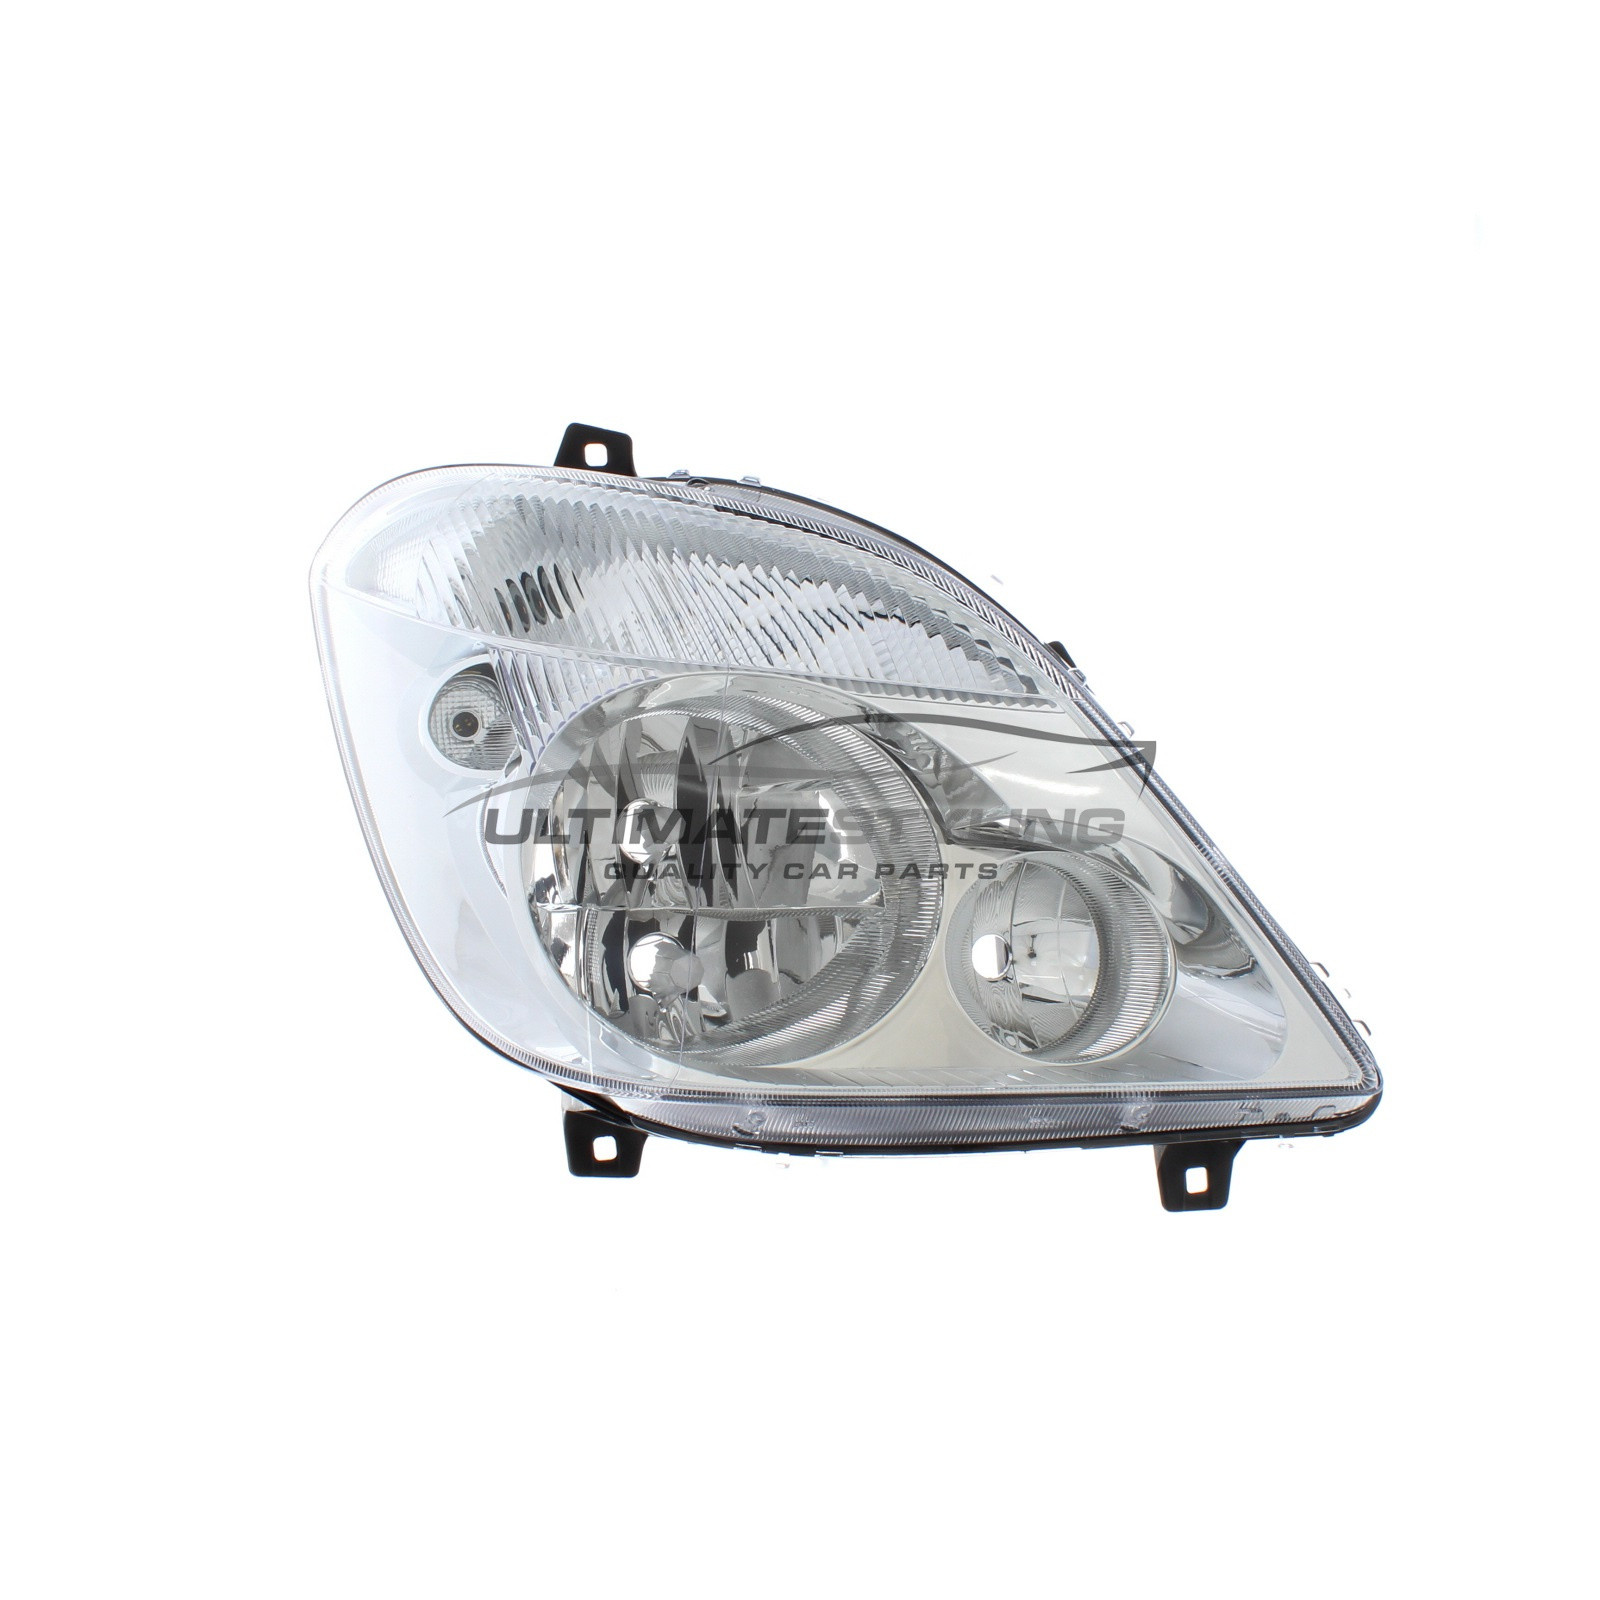 Headlight / Headlamp for Mercedes Benz Sprinter